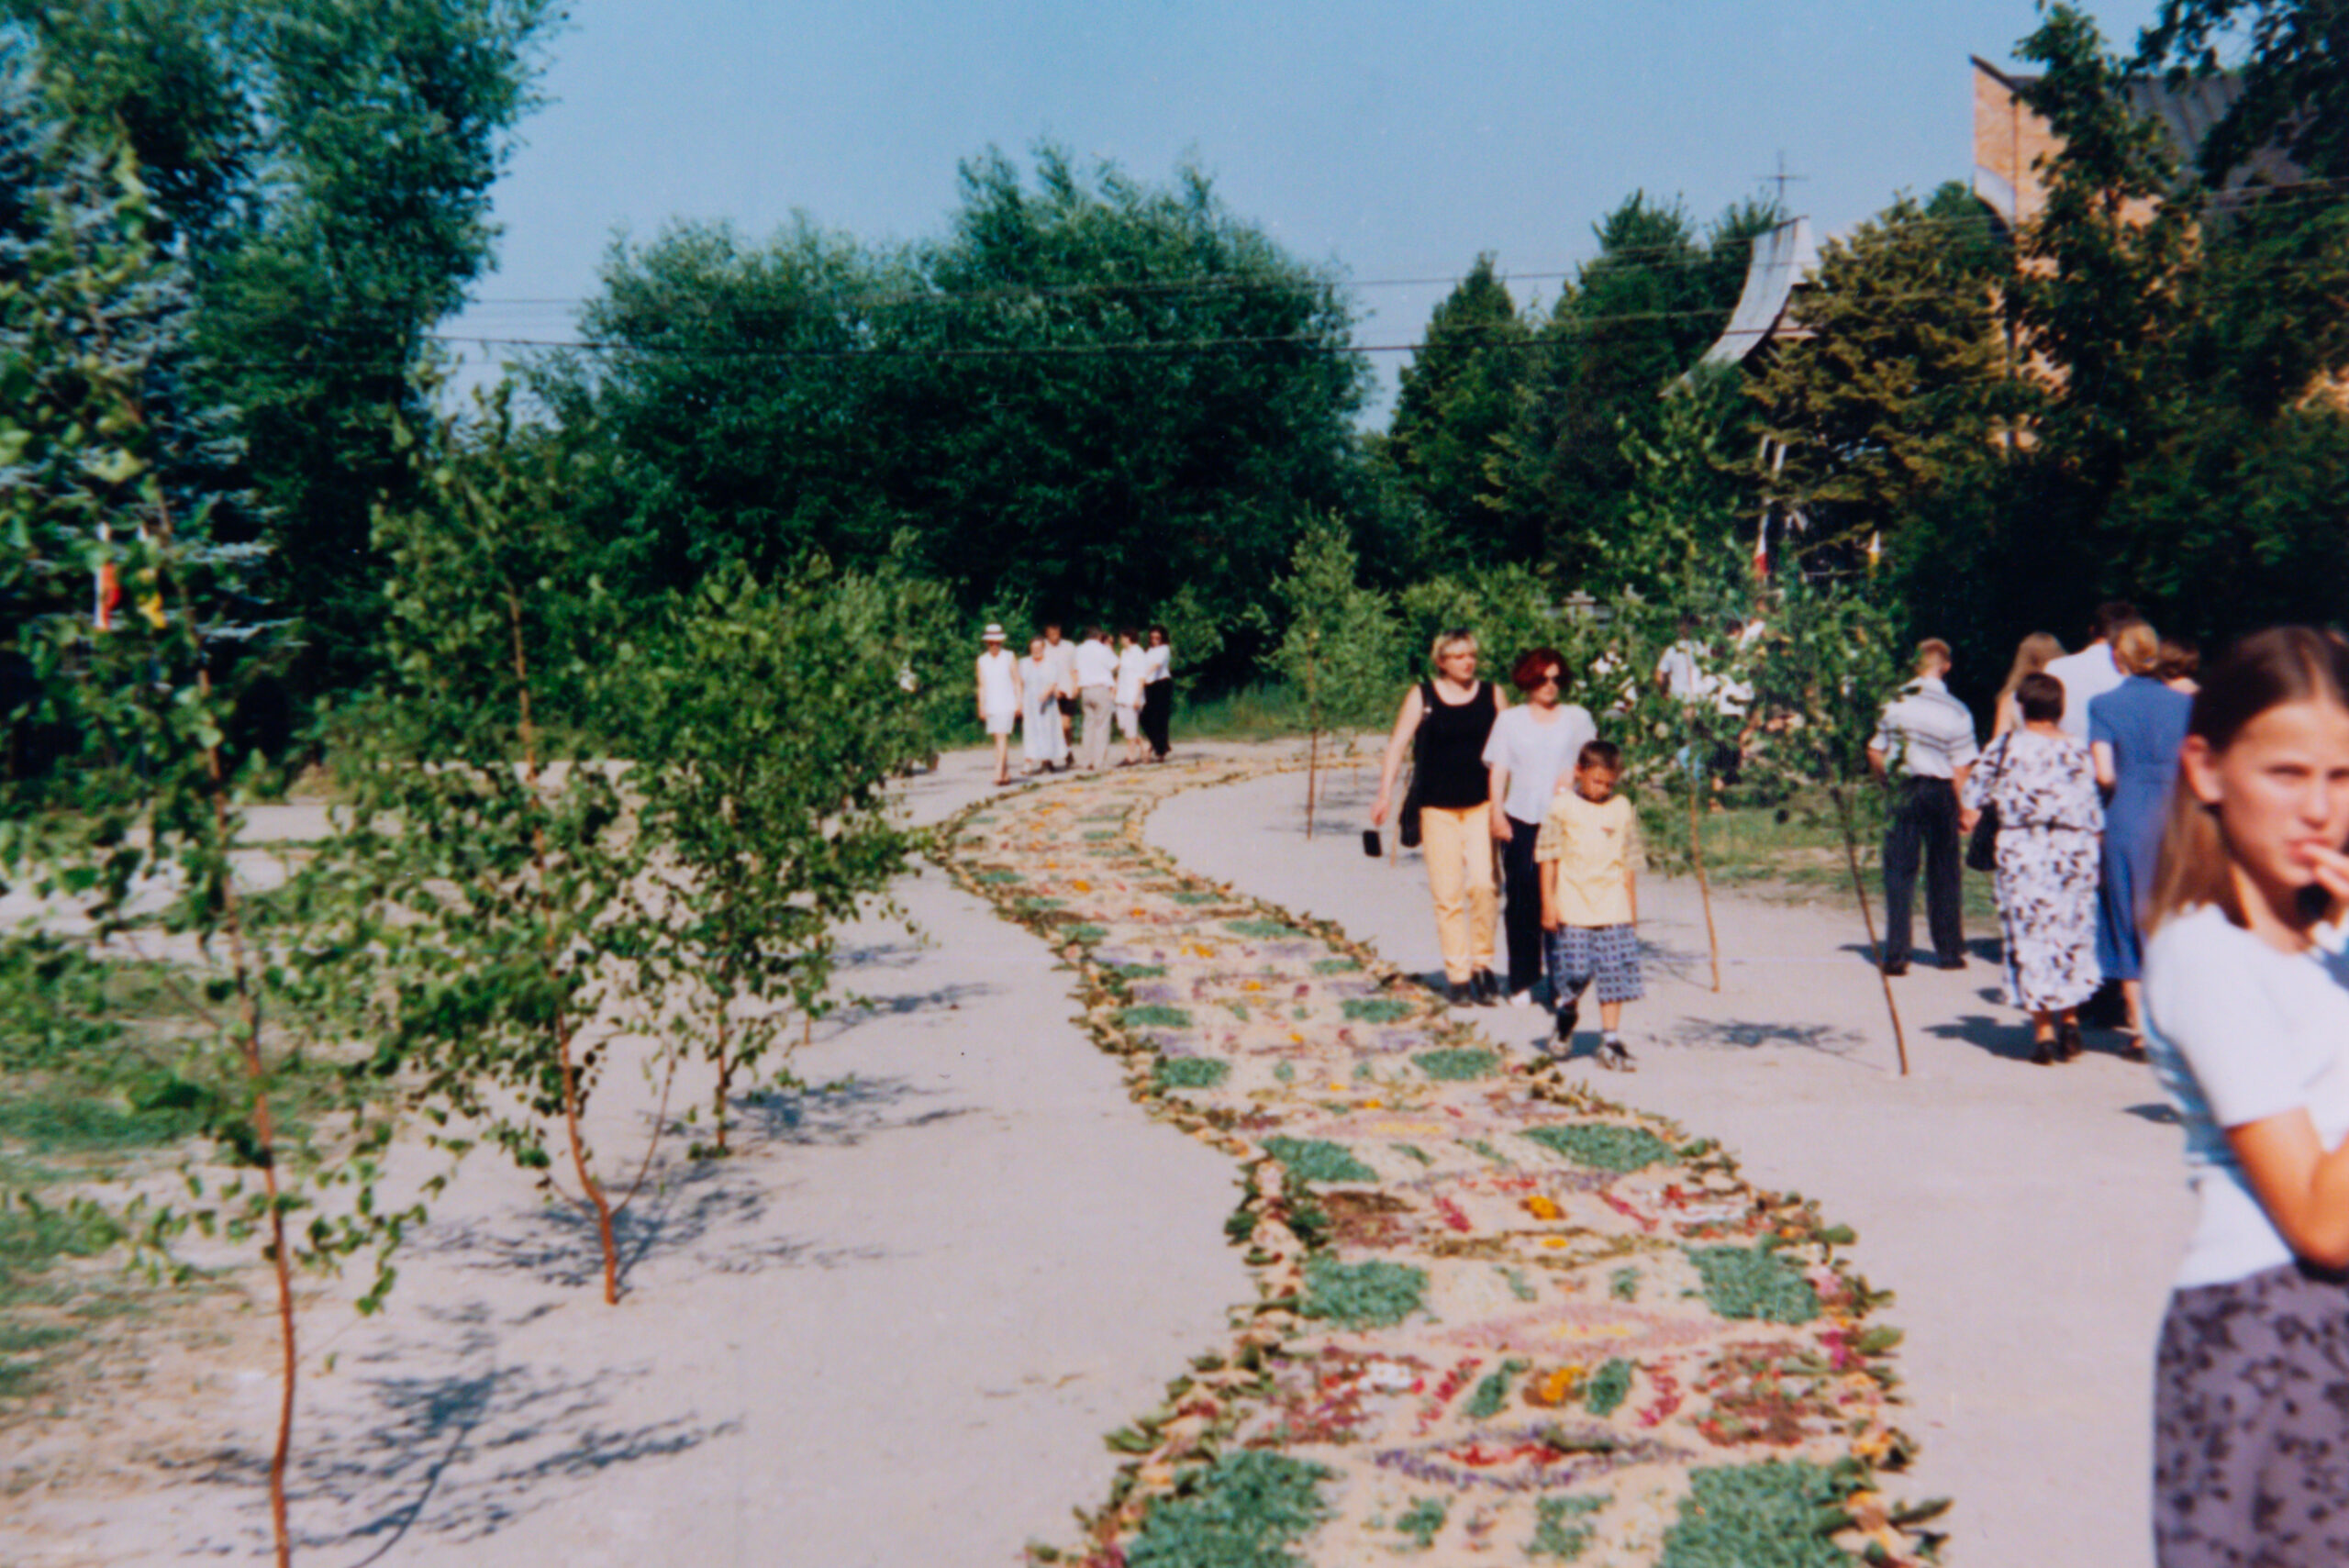 Kwietny dywan, złożony z wielokwiatowych kompozycji, obok drogi gałązki brzozowe wbite w piaszczysta drogę. Po prawej stronie oglądający datę ludzie.